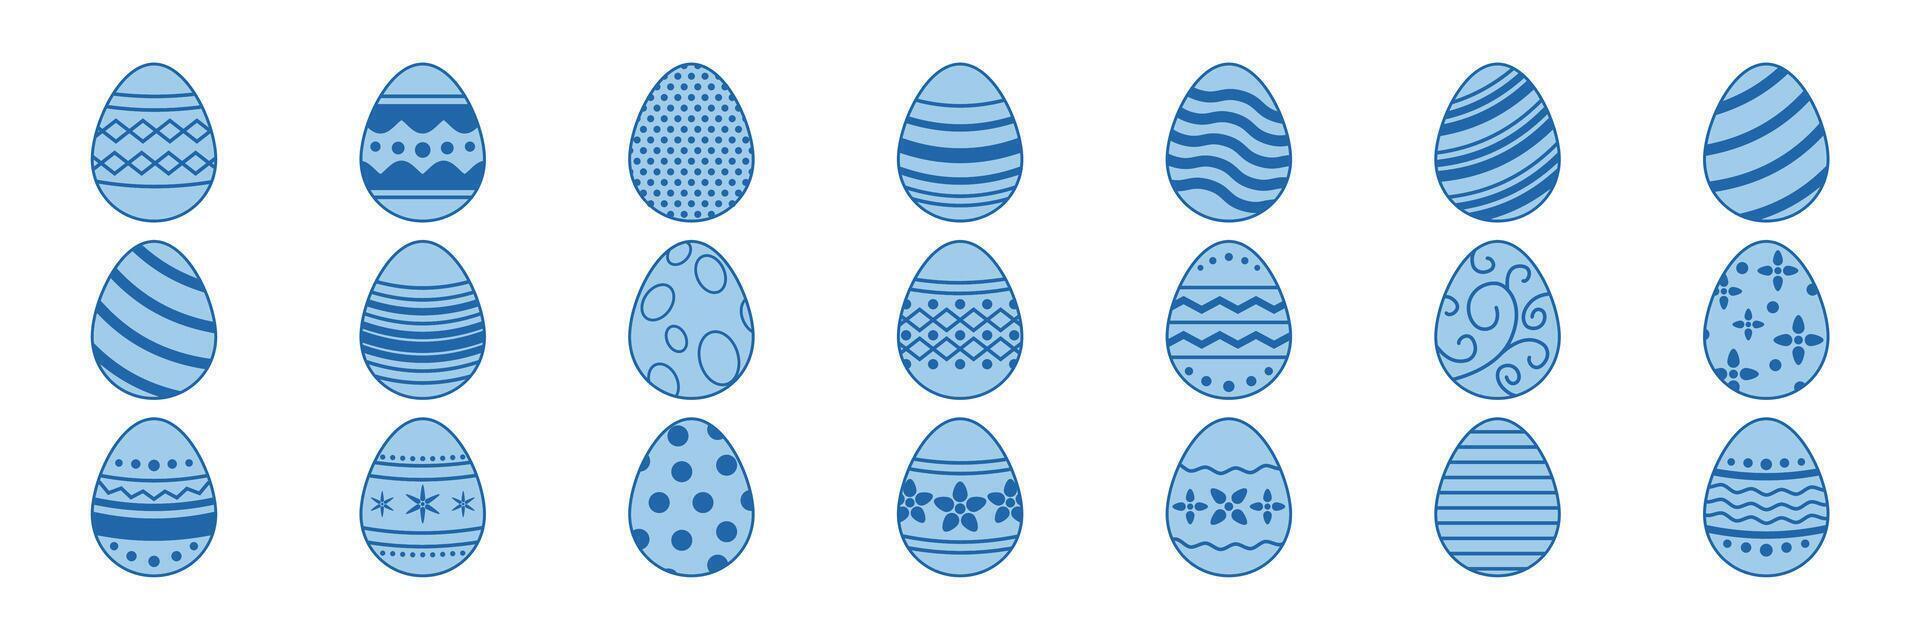 Pascua de Resurrección huevos, Pascua de Resurrección día festival icono colocar, ostern huevo íconos con decoración patrones símbolos recopilación, logo aislado vector ilustración